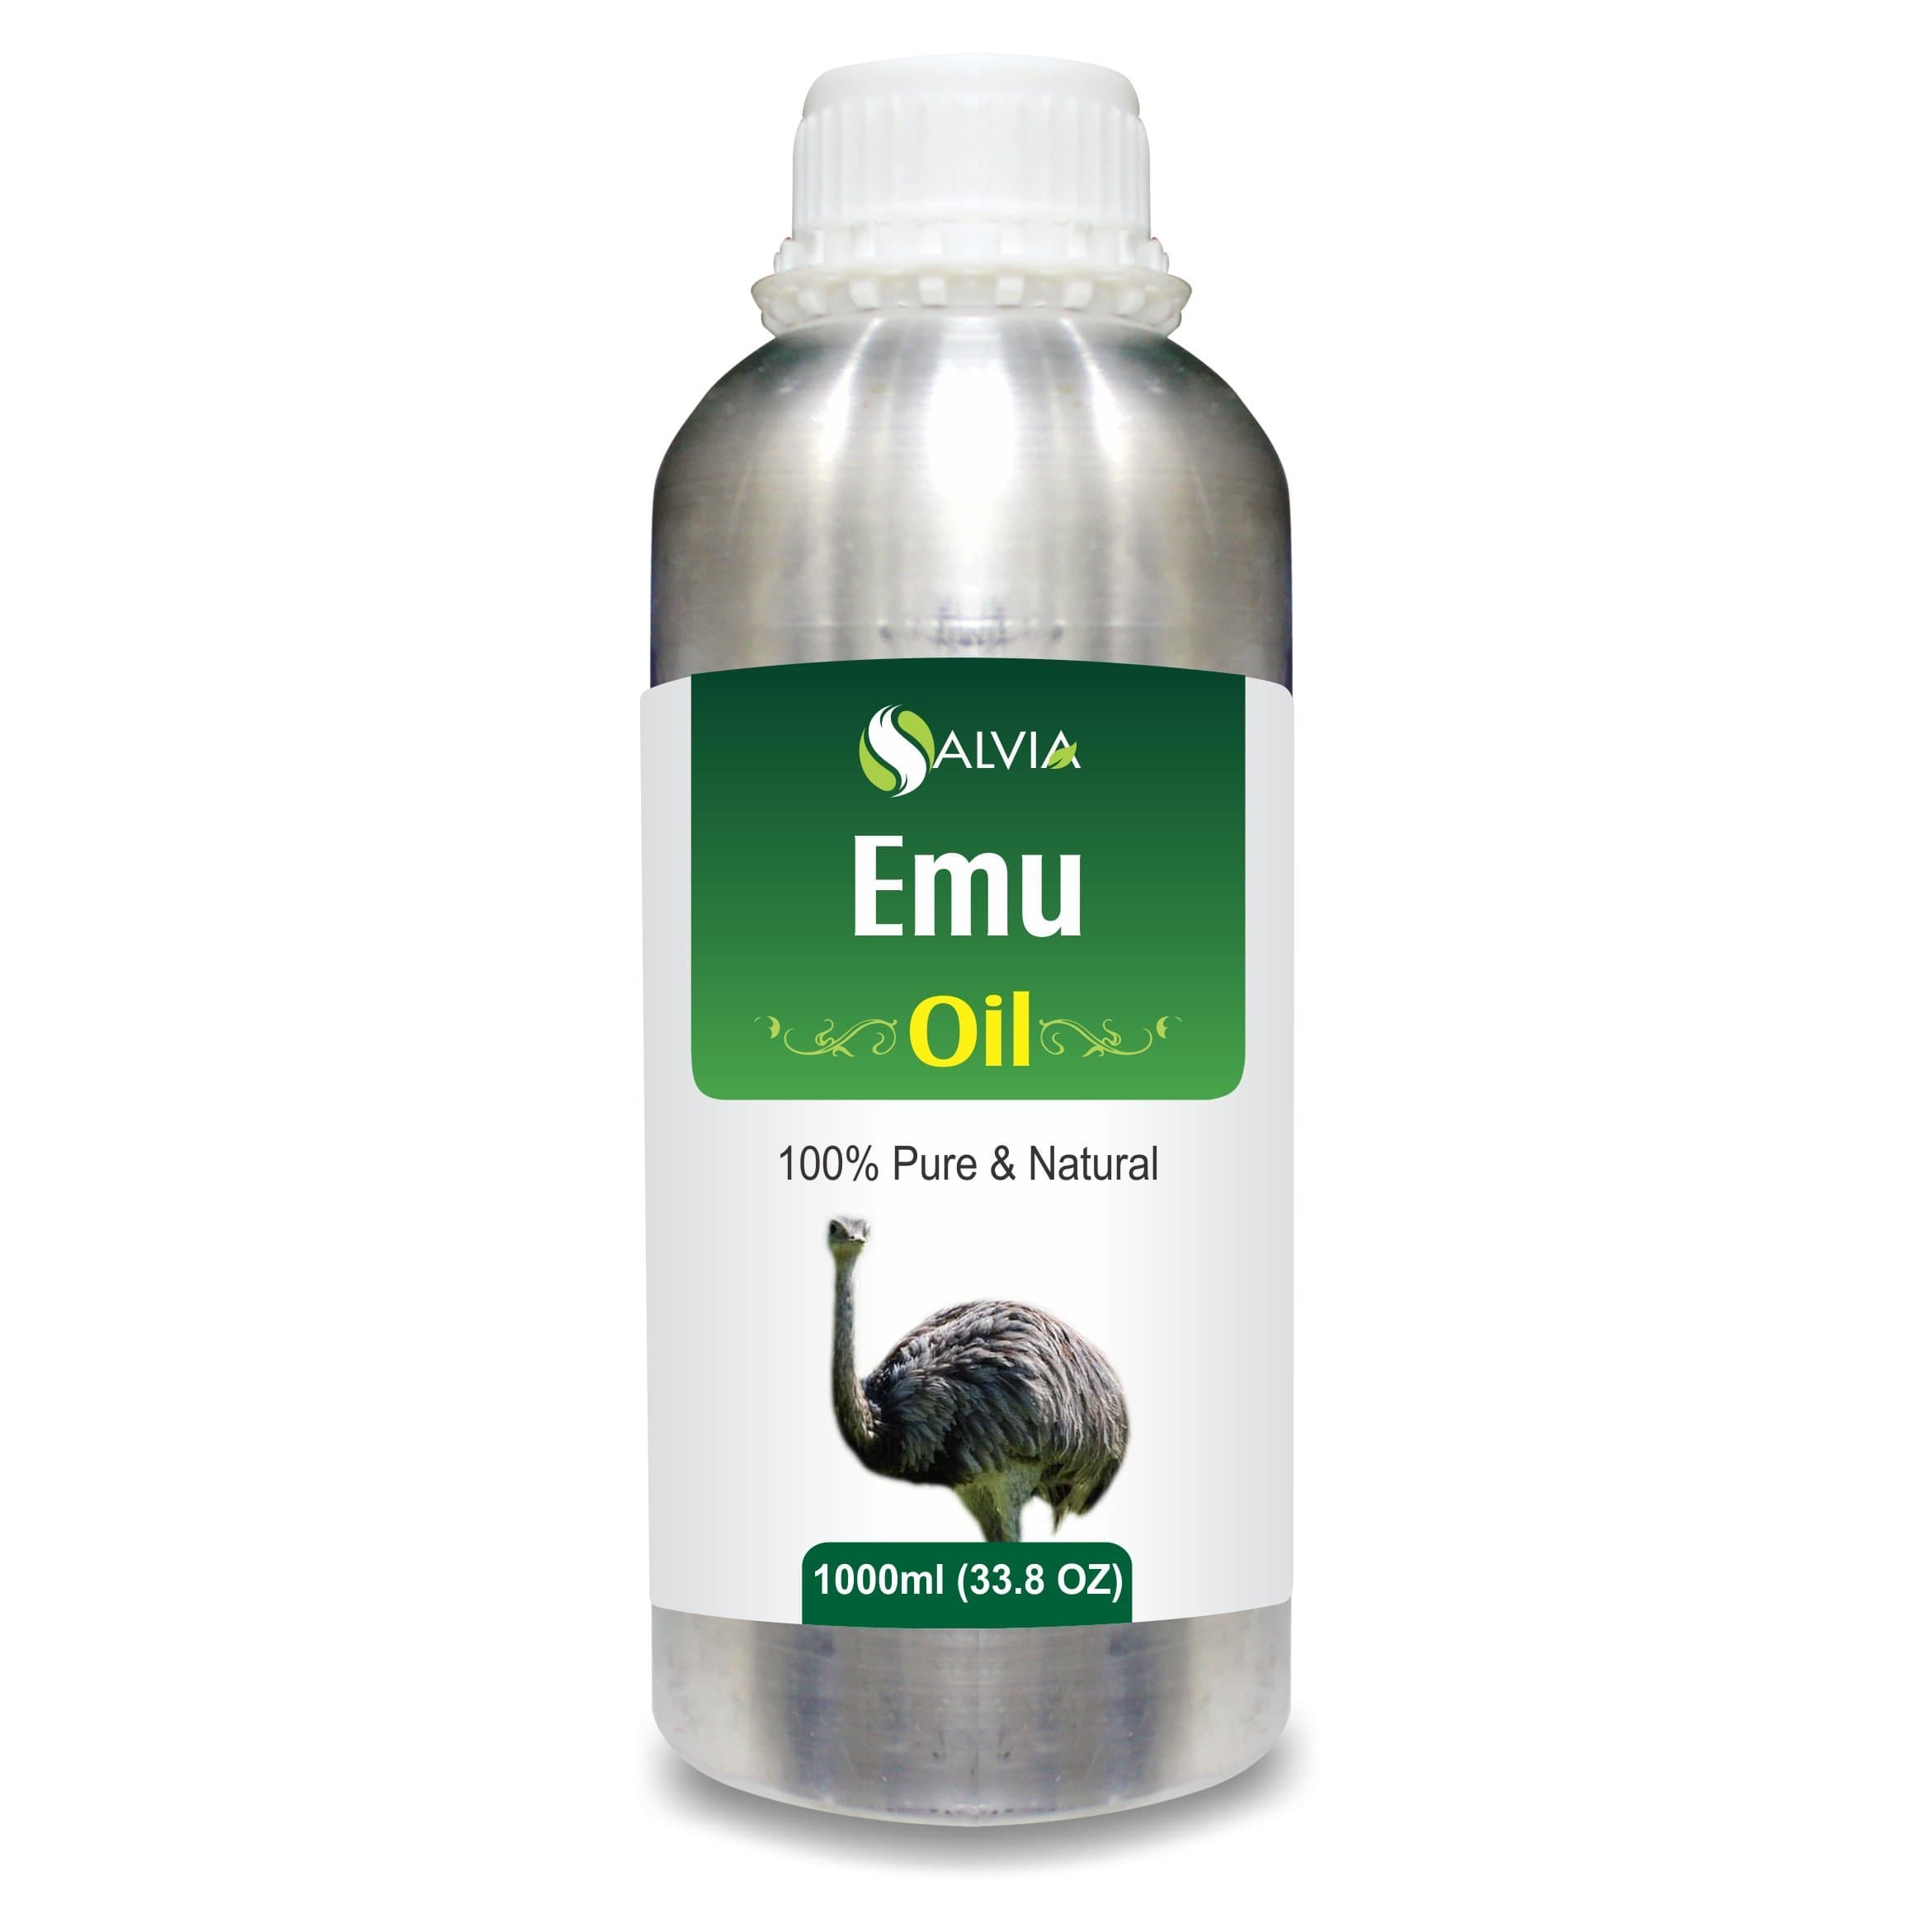 emu oil for face